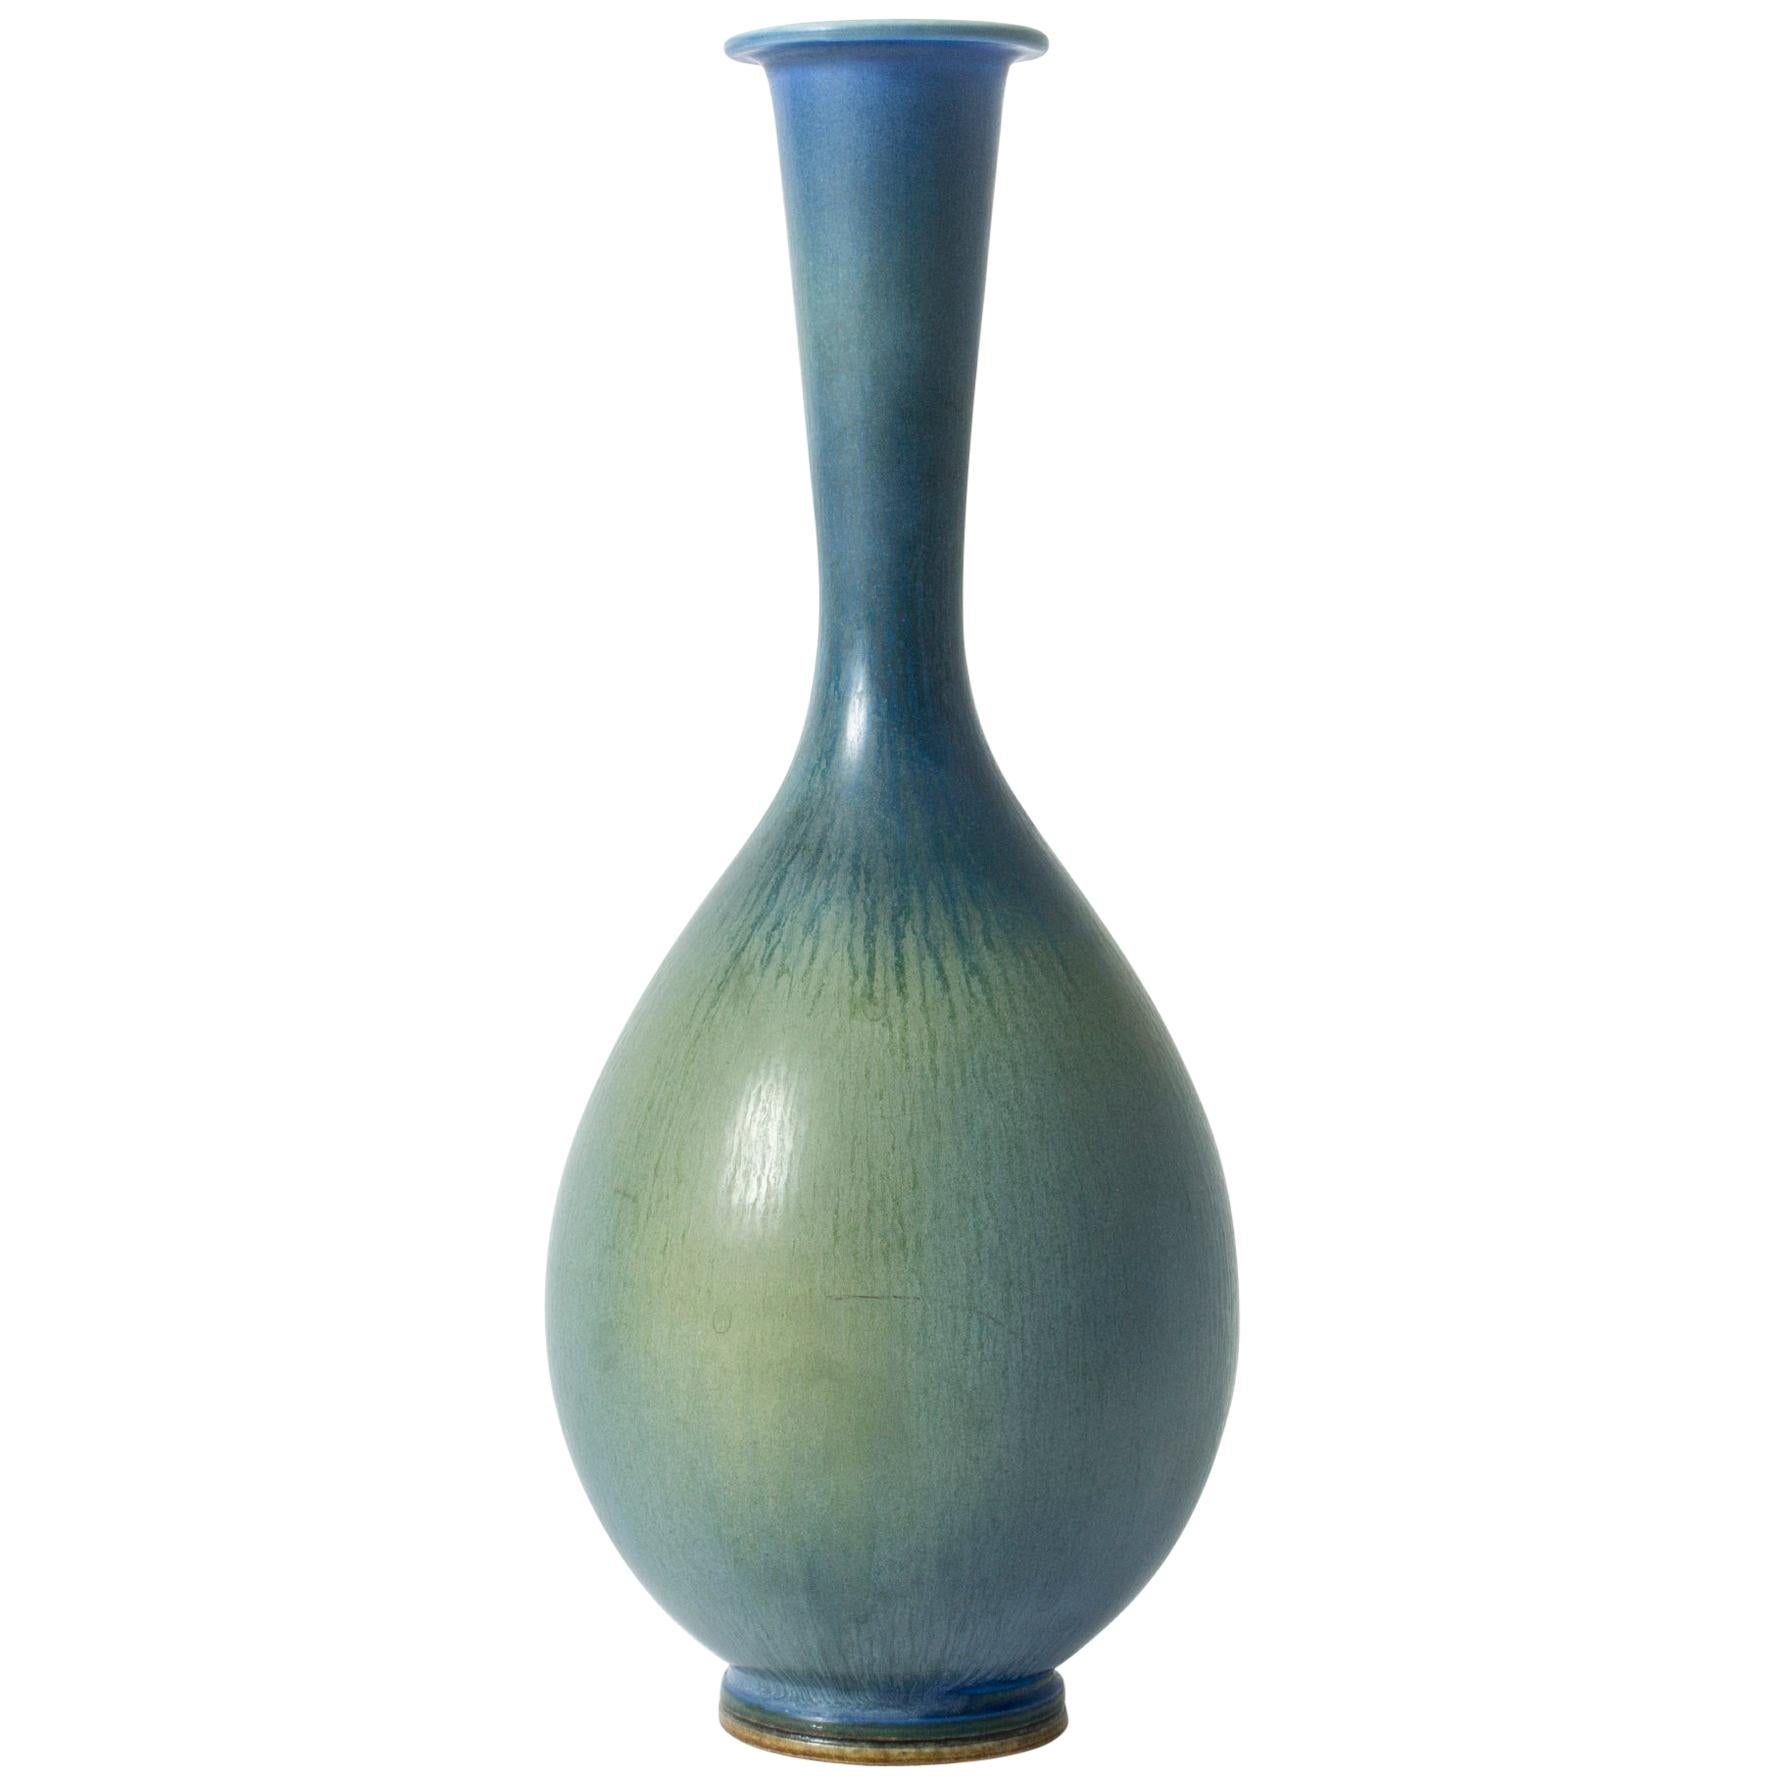 Swedish Stoneware Vase by Berndt Friberg for Gustavsberg, 1950s